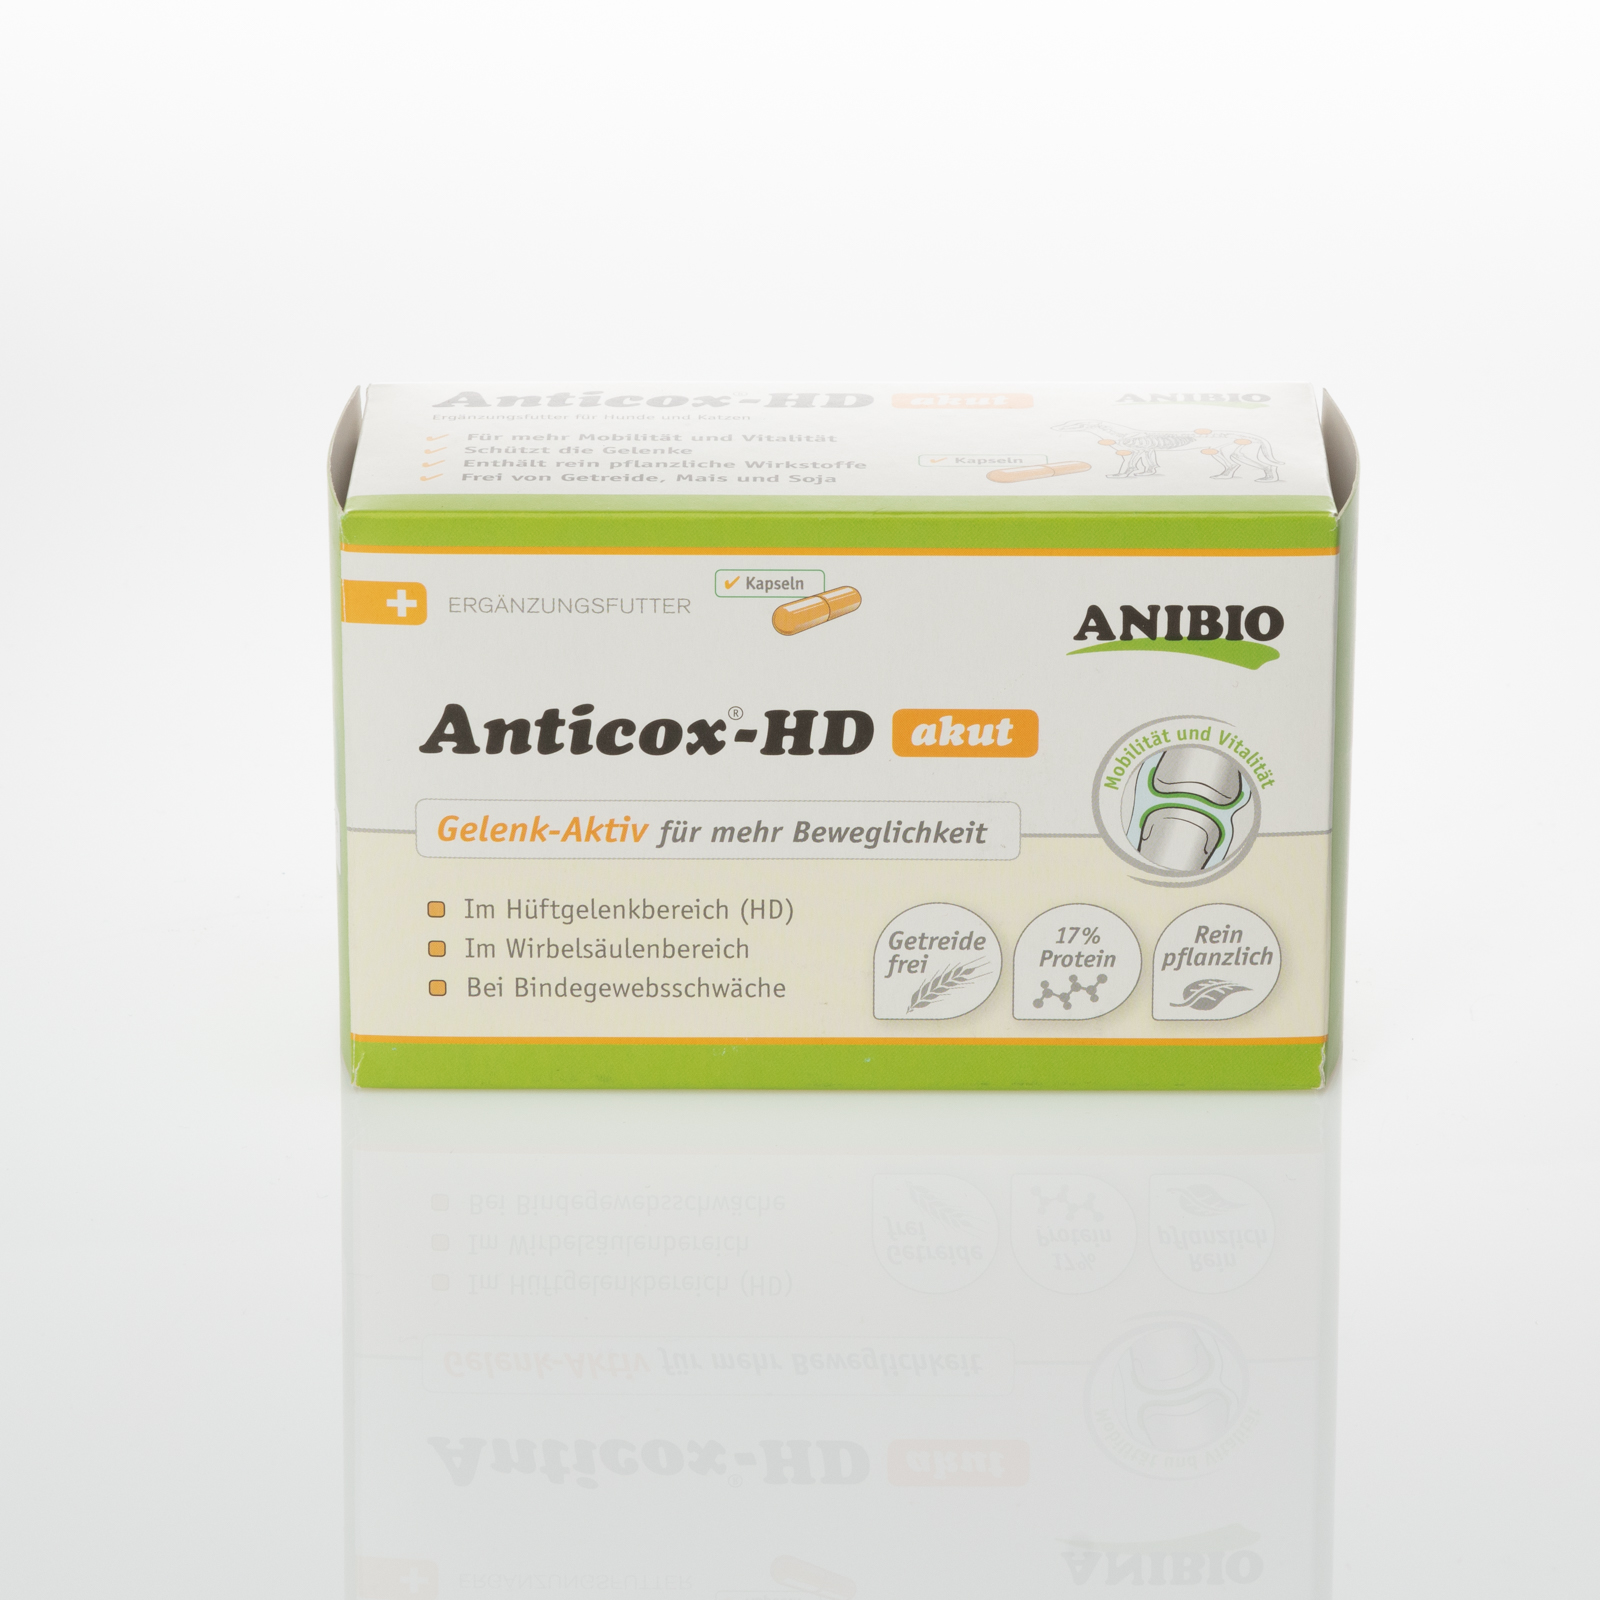 ANIBIO Anticox-HD - 50 Gelenk -Aktiv mehr Beweglichkeit for Dogs & Cats